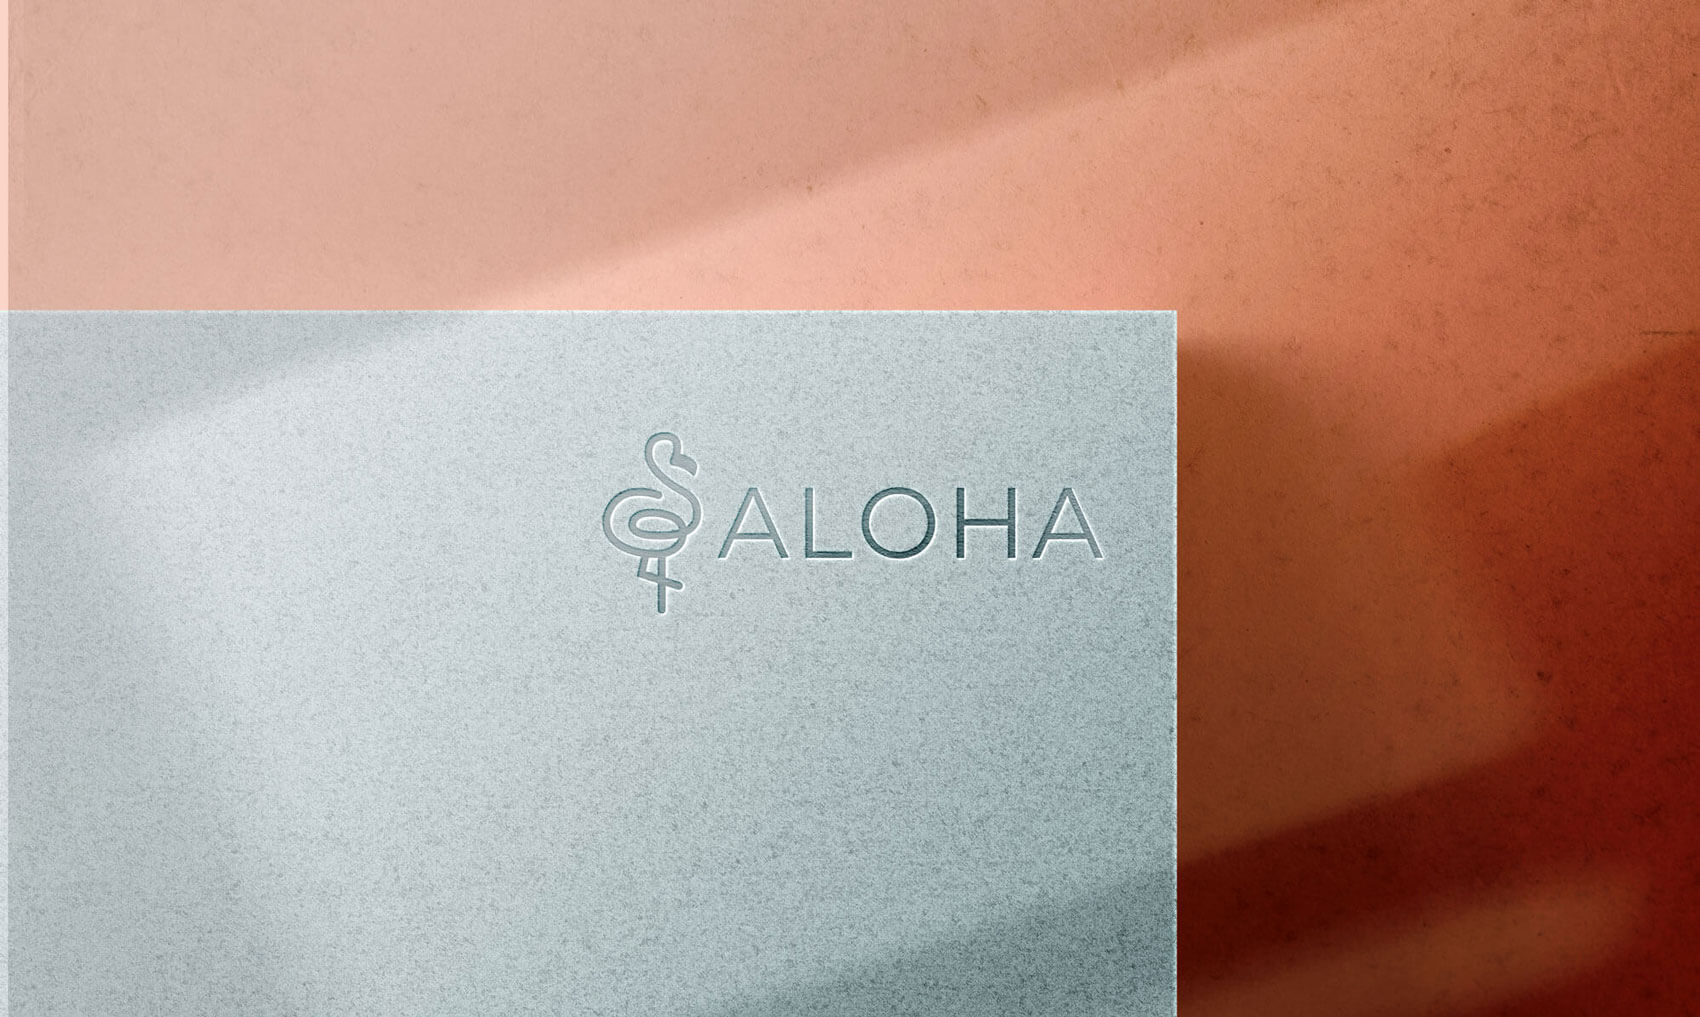 Logo e brand identity di Aloha realizzato da SEBA! grafico di Gravellona Toce nel VCO dell'incisione del logo su marmo